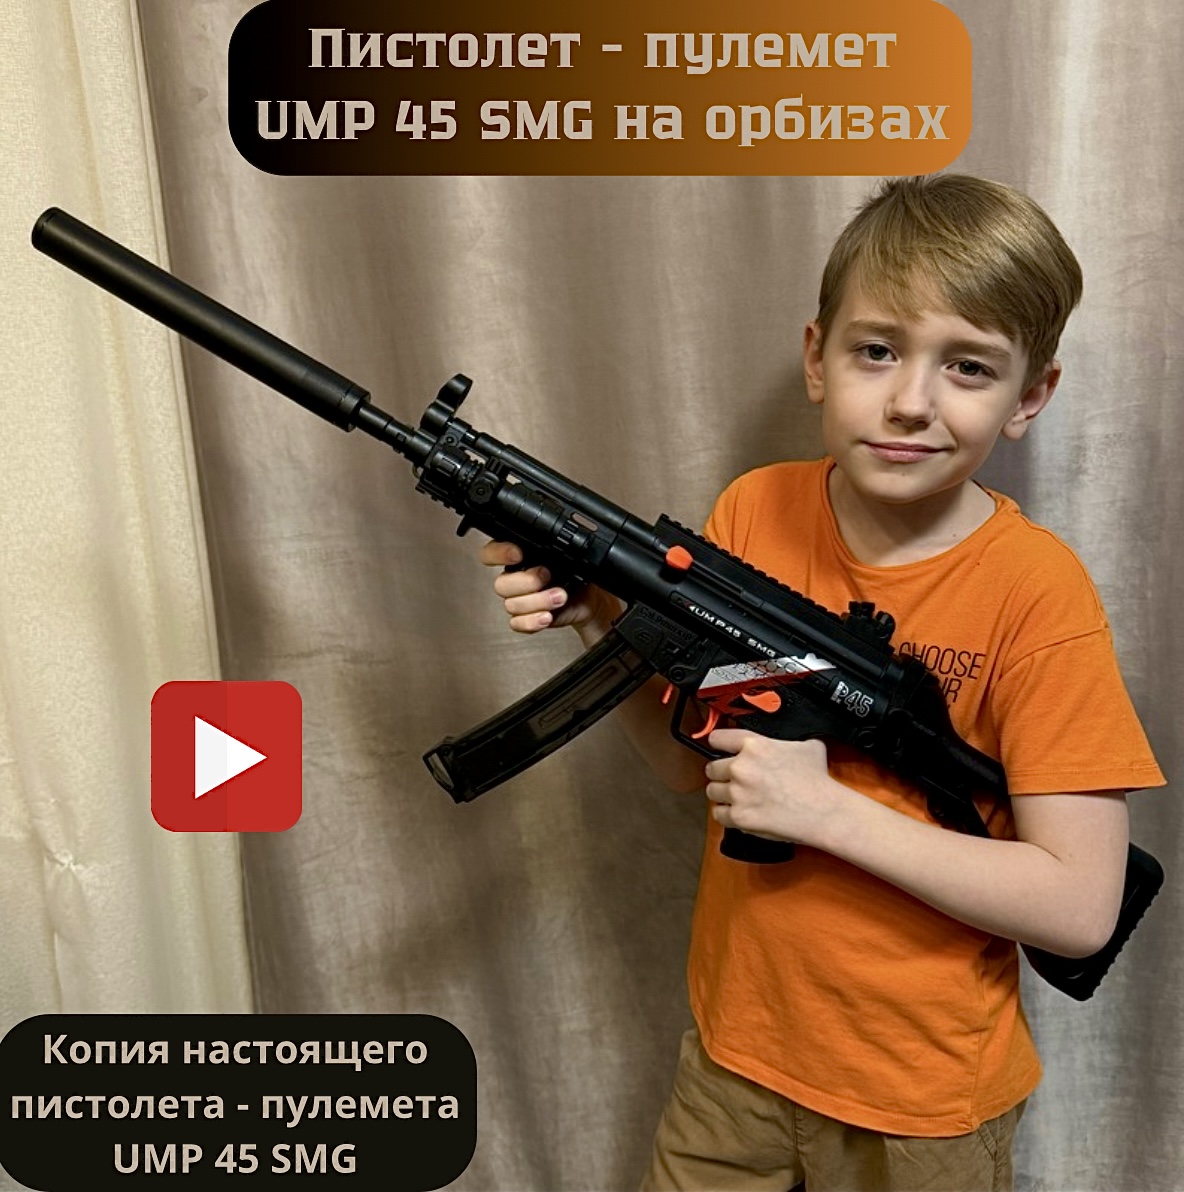 Пистолет-пулемет детский игровой RanCap UMP 45 SMG с орбизами (игрушка) огнестрельное игрушечное оружие shantou gepai пневматический пистолет с пульками 1b00741